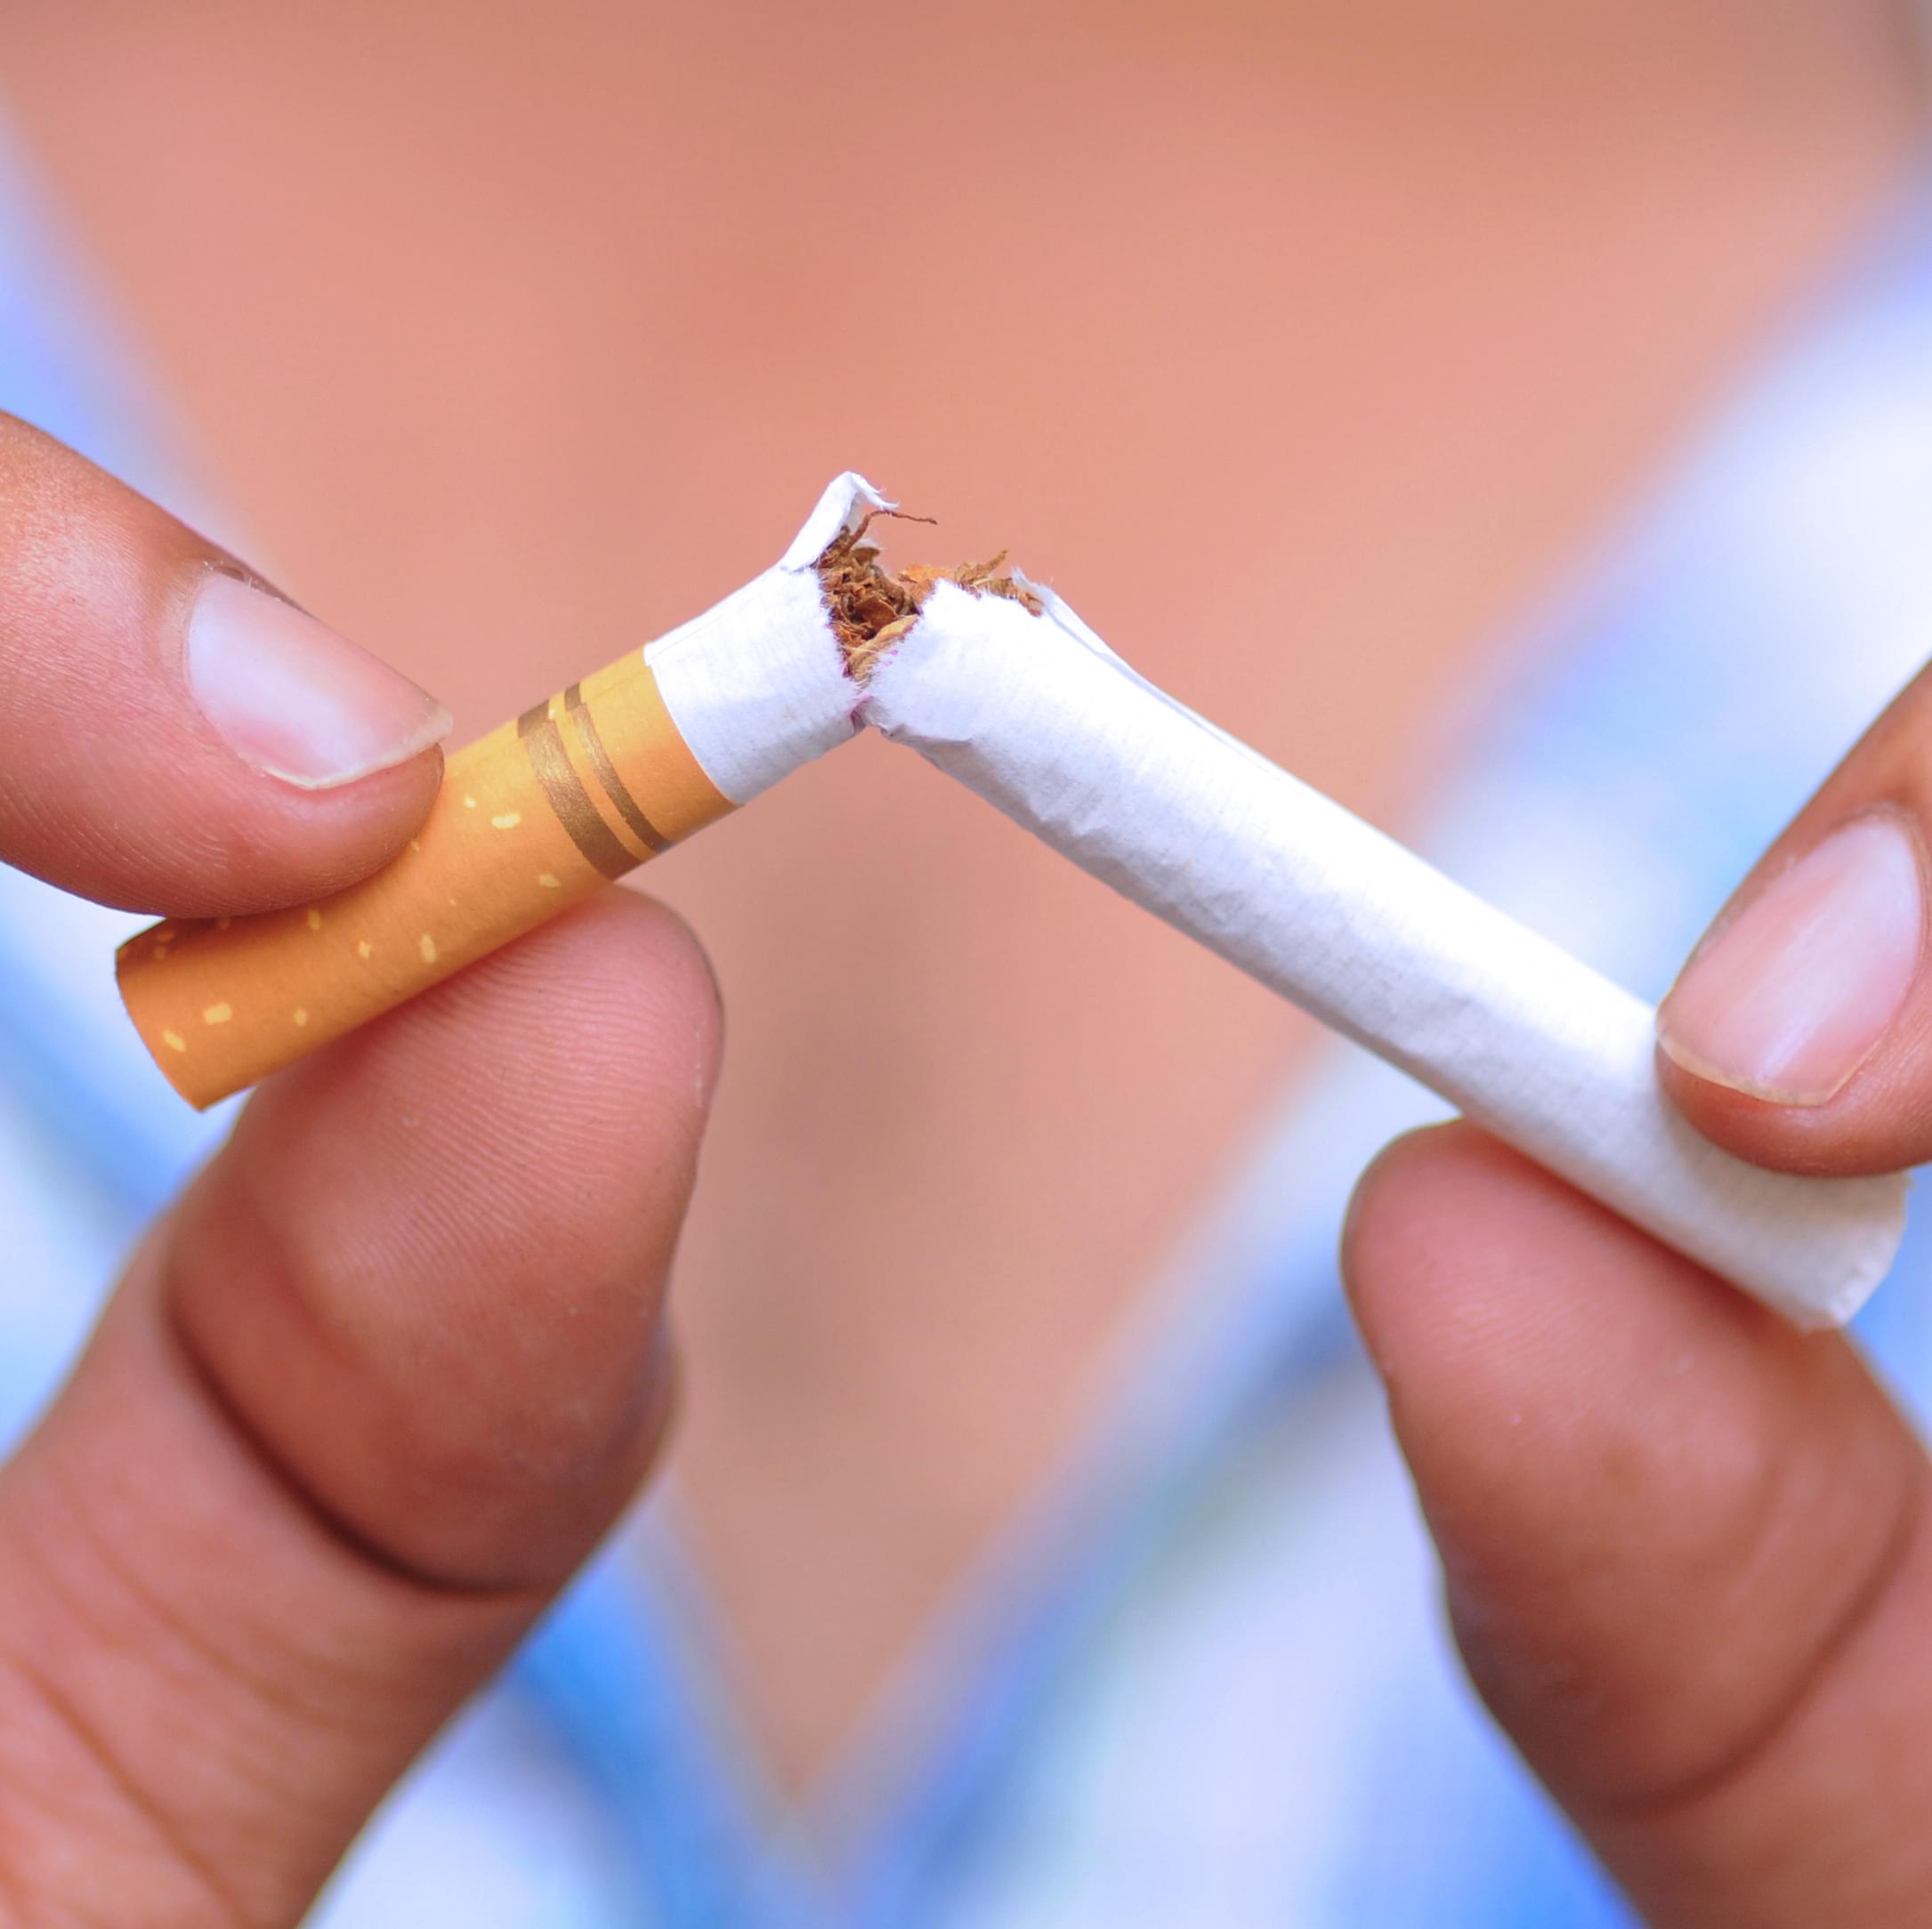 Лечение табачной зависимости как важная составляющая полноценного избавления от пристрастия к спиртному